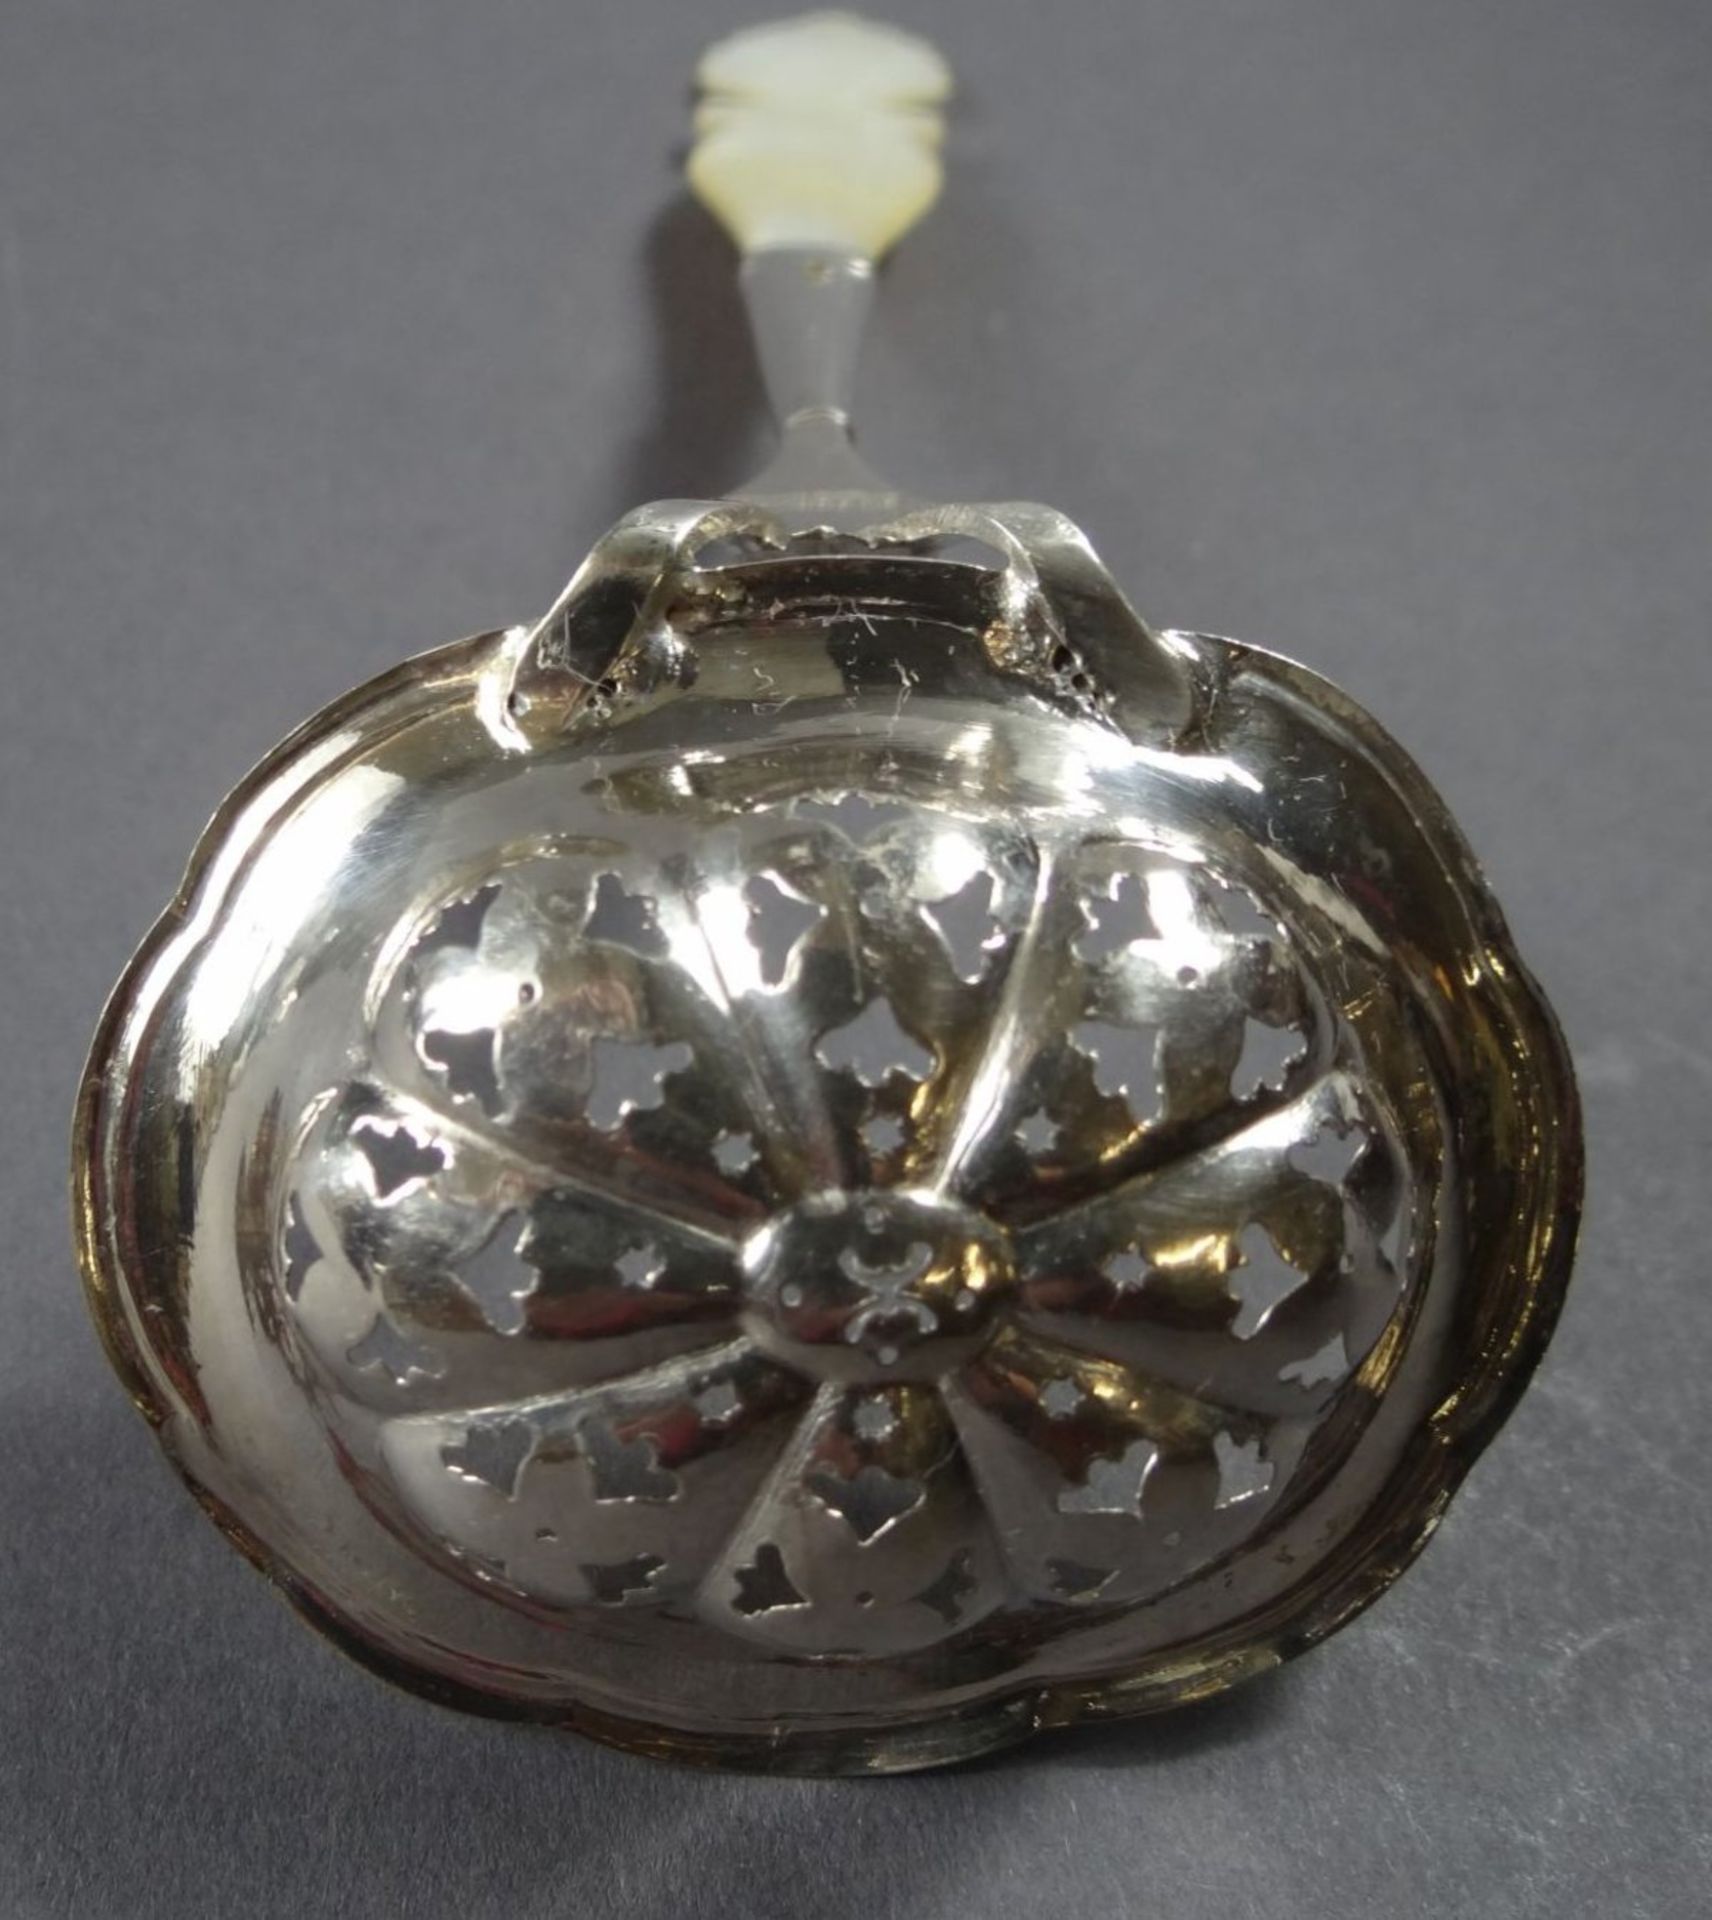 Streulöffel, Silber vergoldet, mit Perlmuttgriff,beschriftet "Münsster", L-18 cm, zus. 33 gr. - Bild 4 aus 8